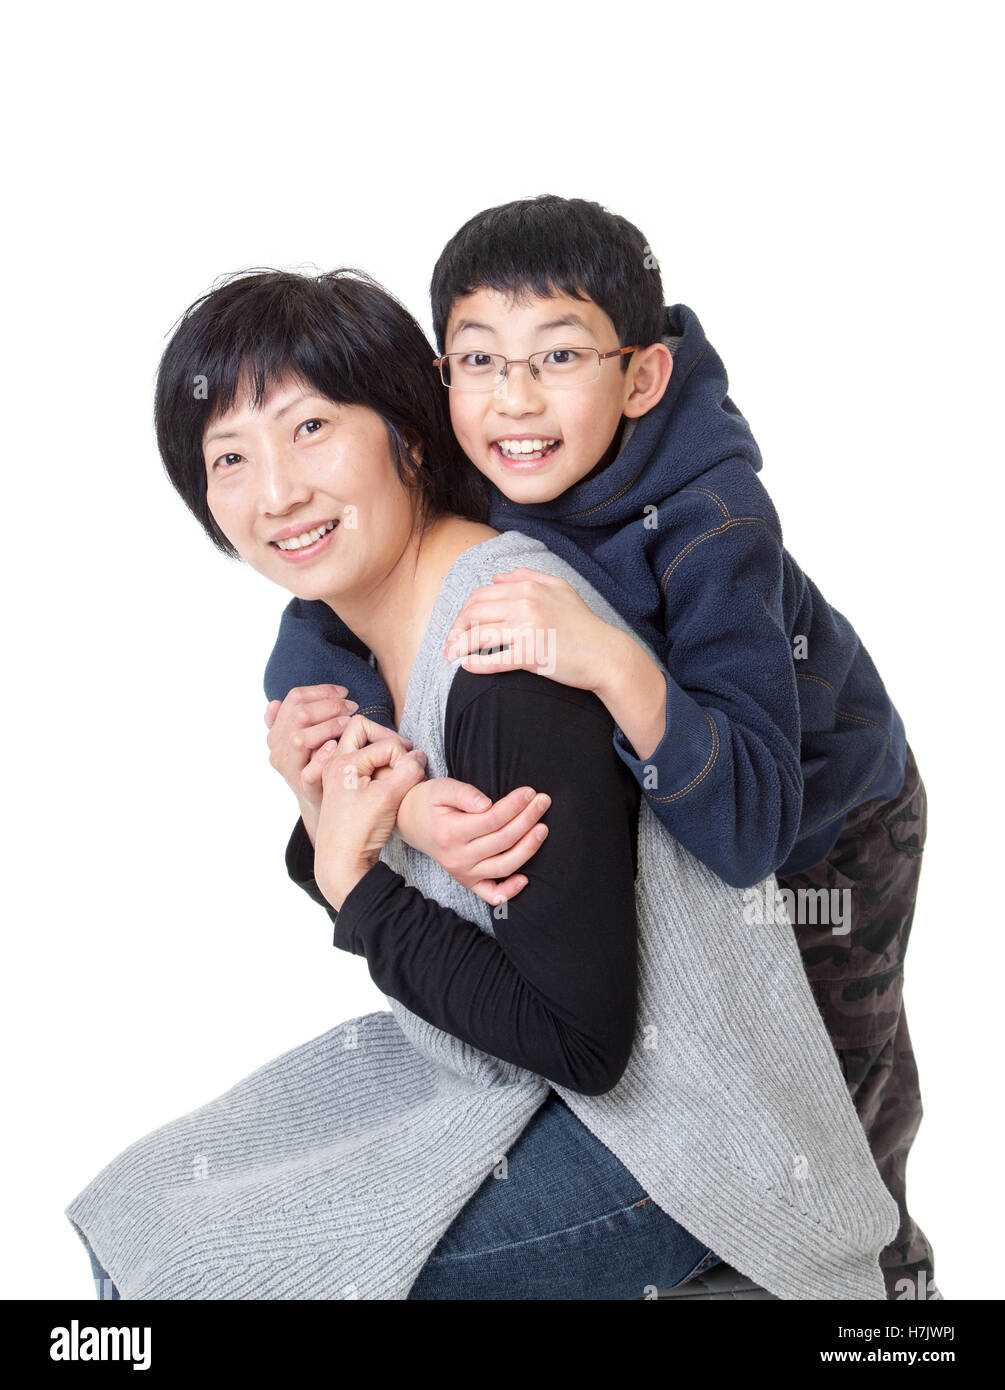 Liebevolle kleine asiatische junge und seine Mutter in einer glücklich Pose. Isoliert auf weißem Hintergrund. Stockfoto